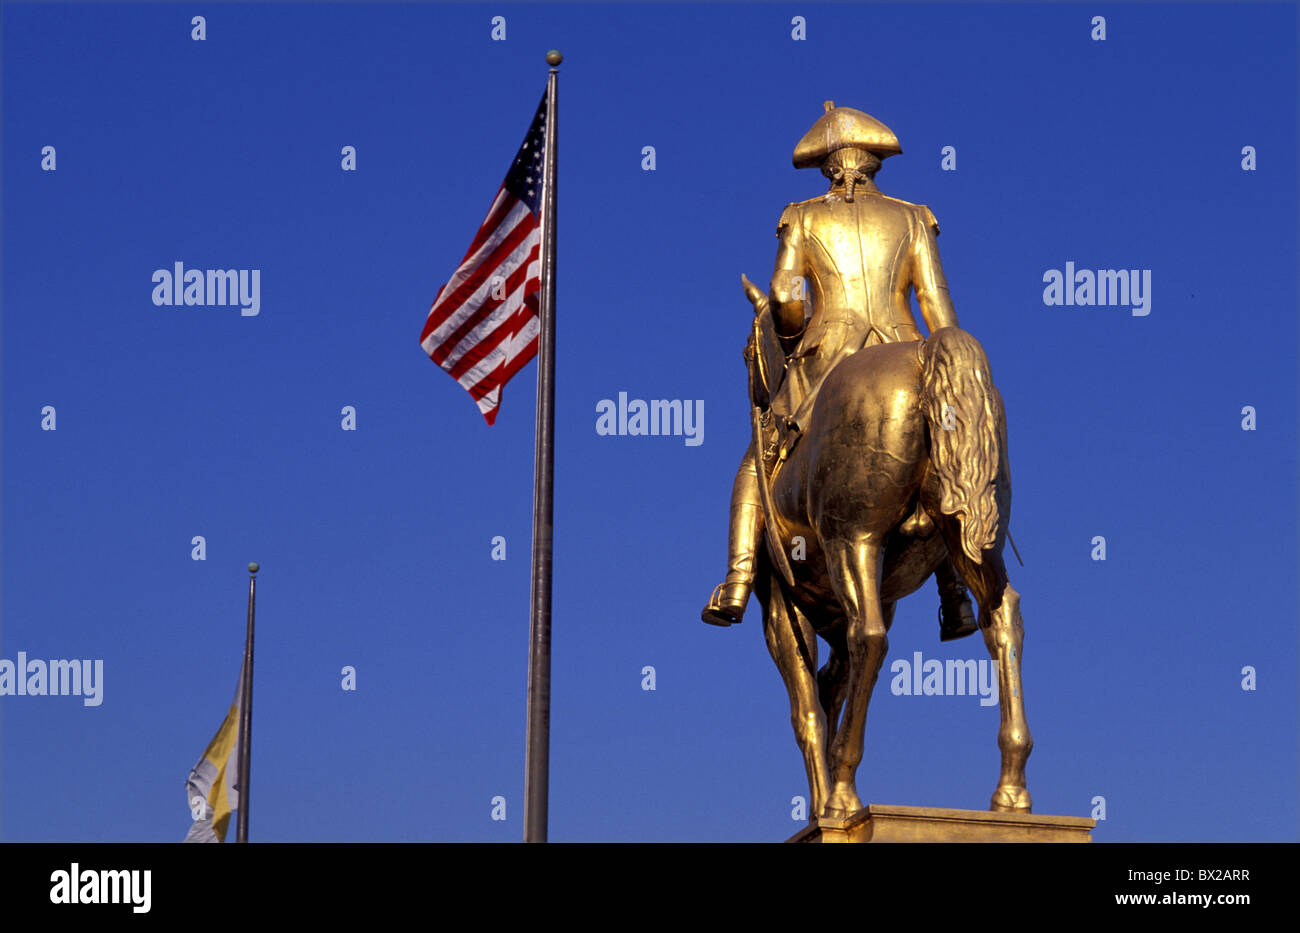 Fahrer goldene Skulptur amerikanische Flagge banner Fahne Philadelphia Museum der Kunst Philadelphia Pennsylvania USA Un Stockfoto